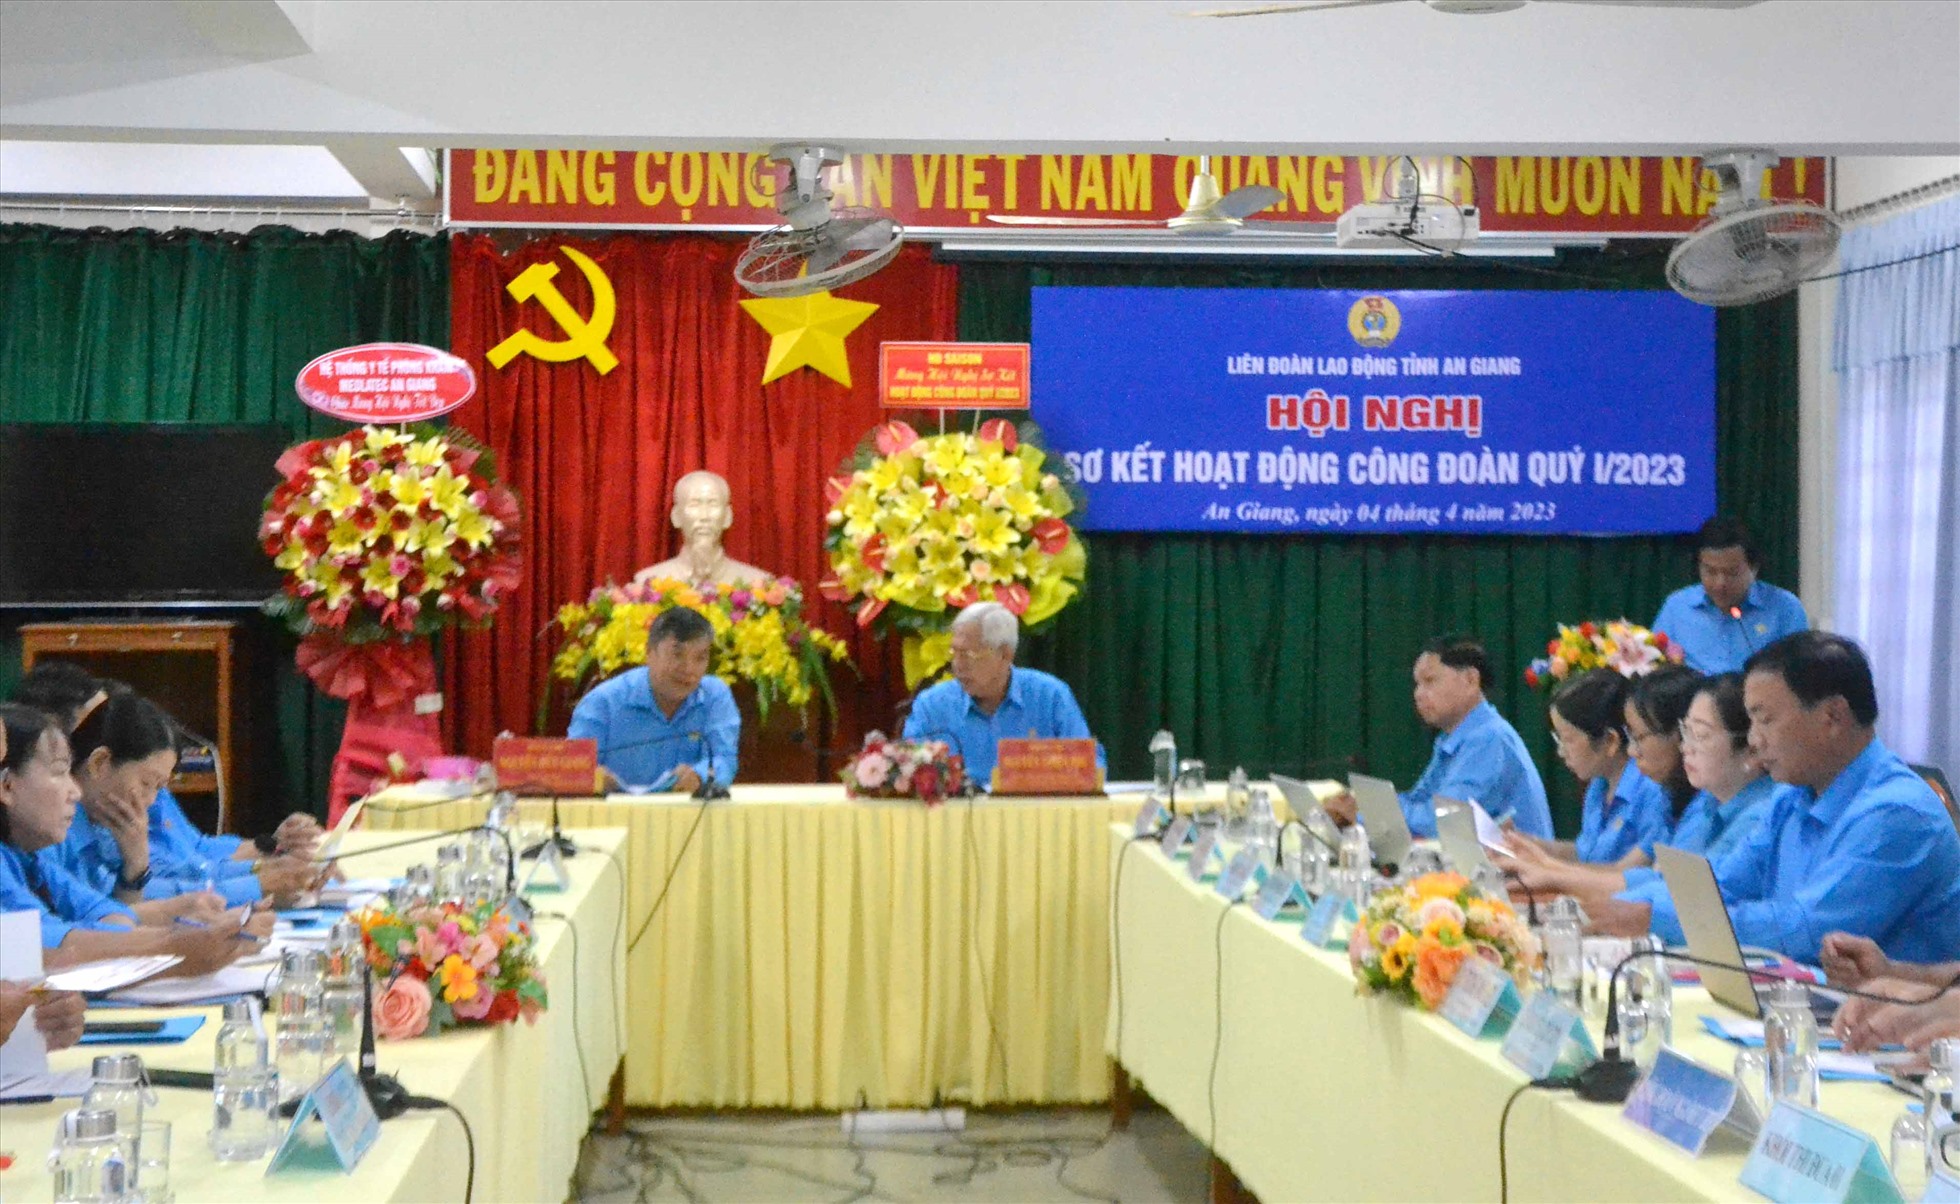 Quang cảnh hội nghị sơ kết hoạt động Công đoàn quý I.2023 của LĐLĐ tỉnh An Giang. Ảnh: Lâm Điền